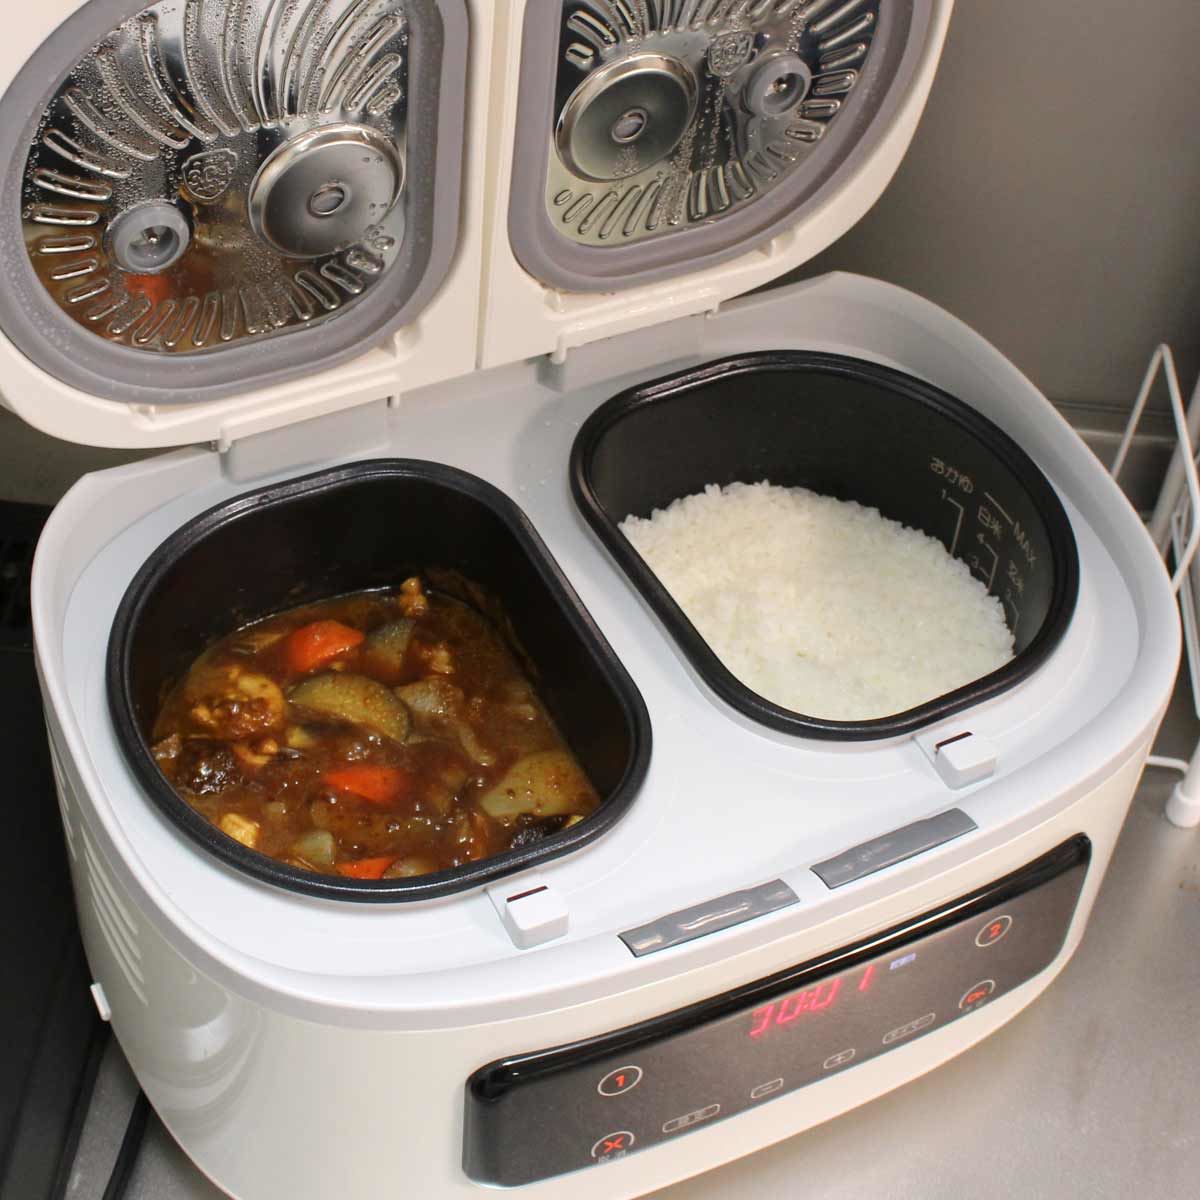 ツインシェフ 5合炊き 自動調理器